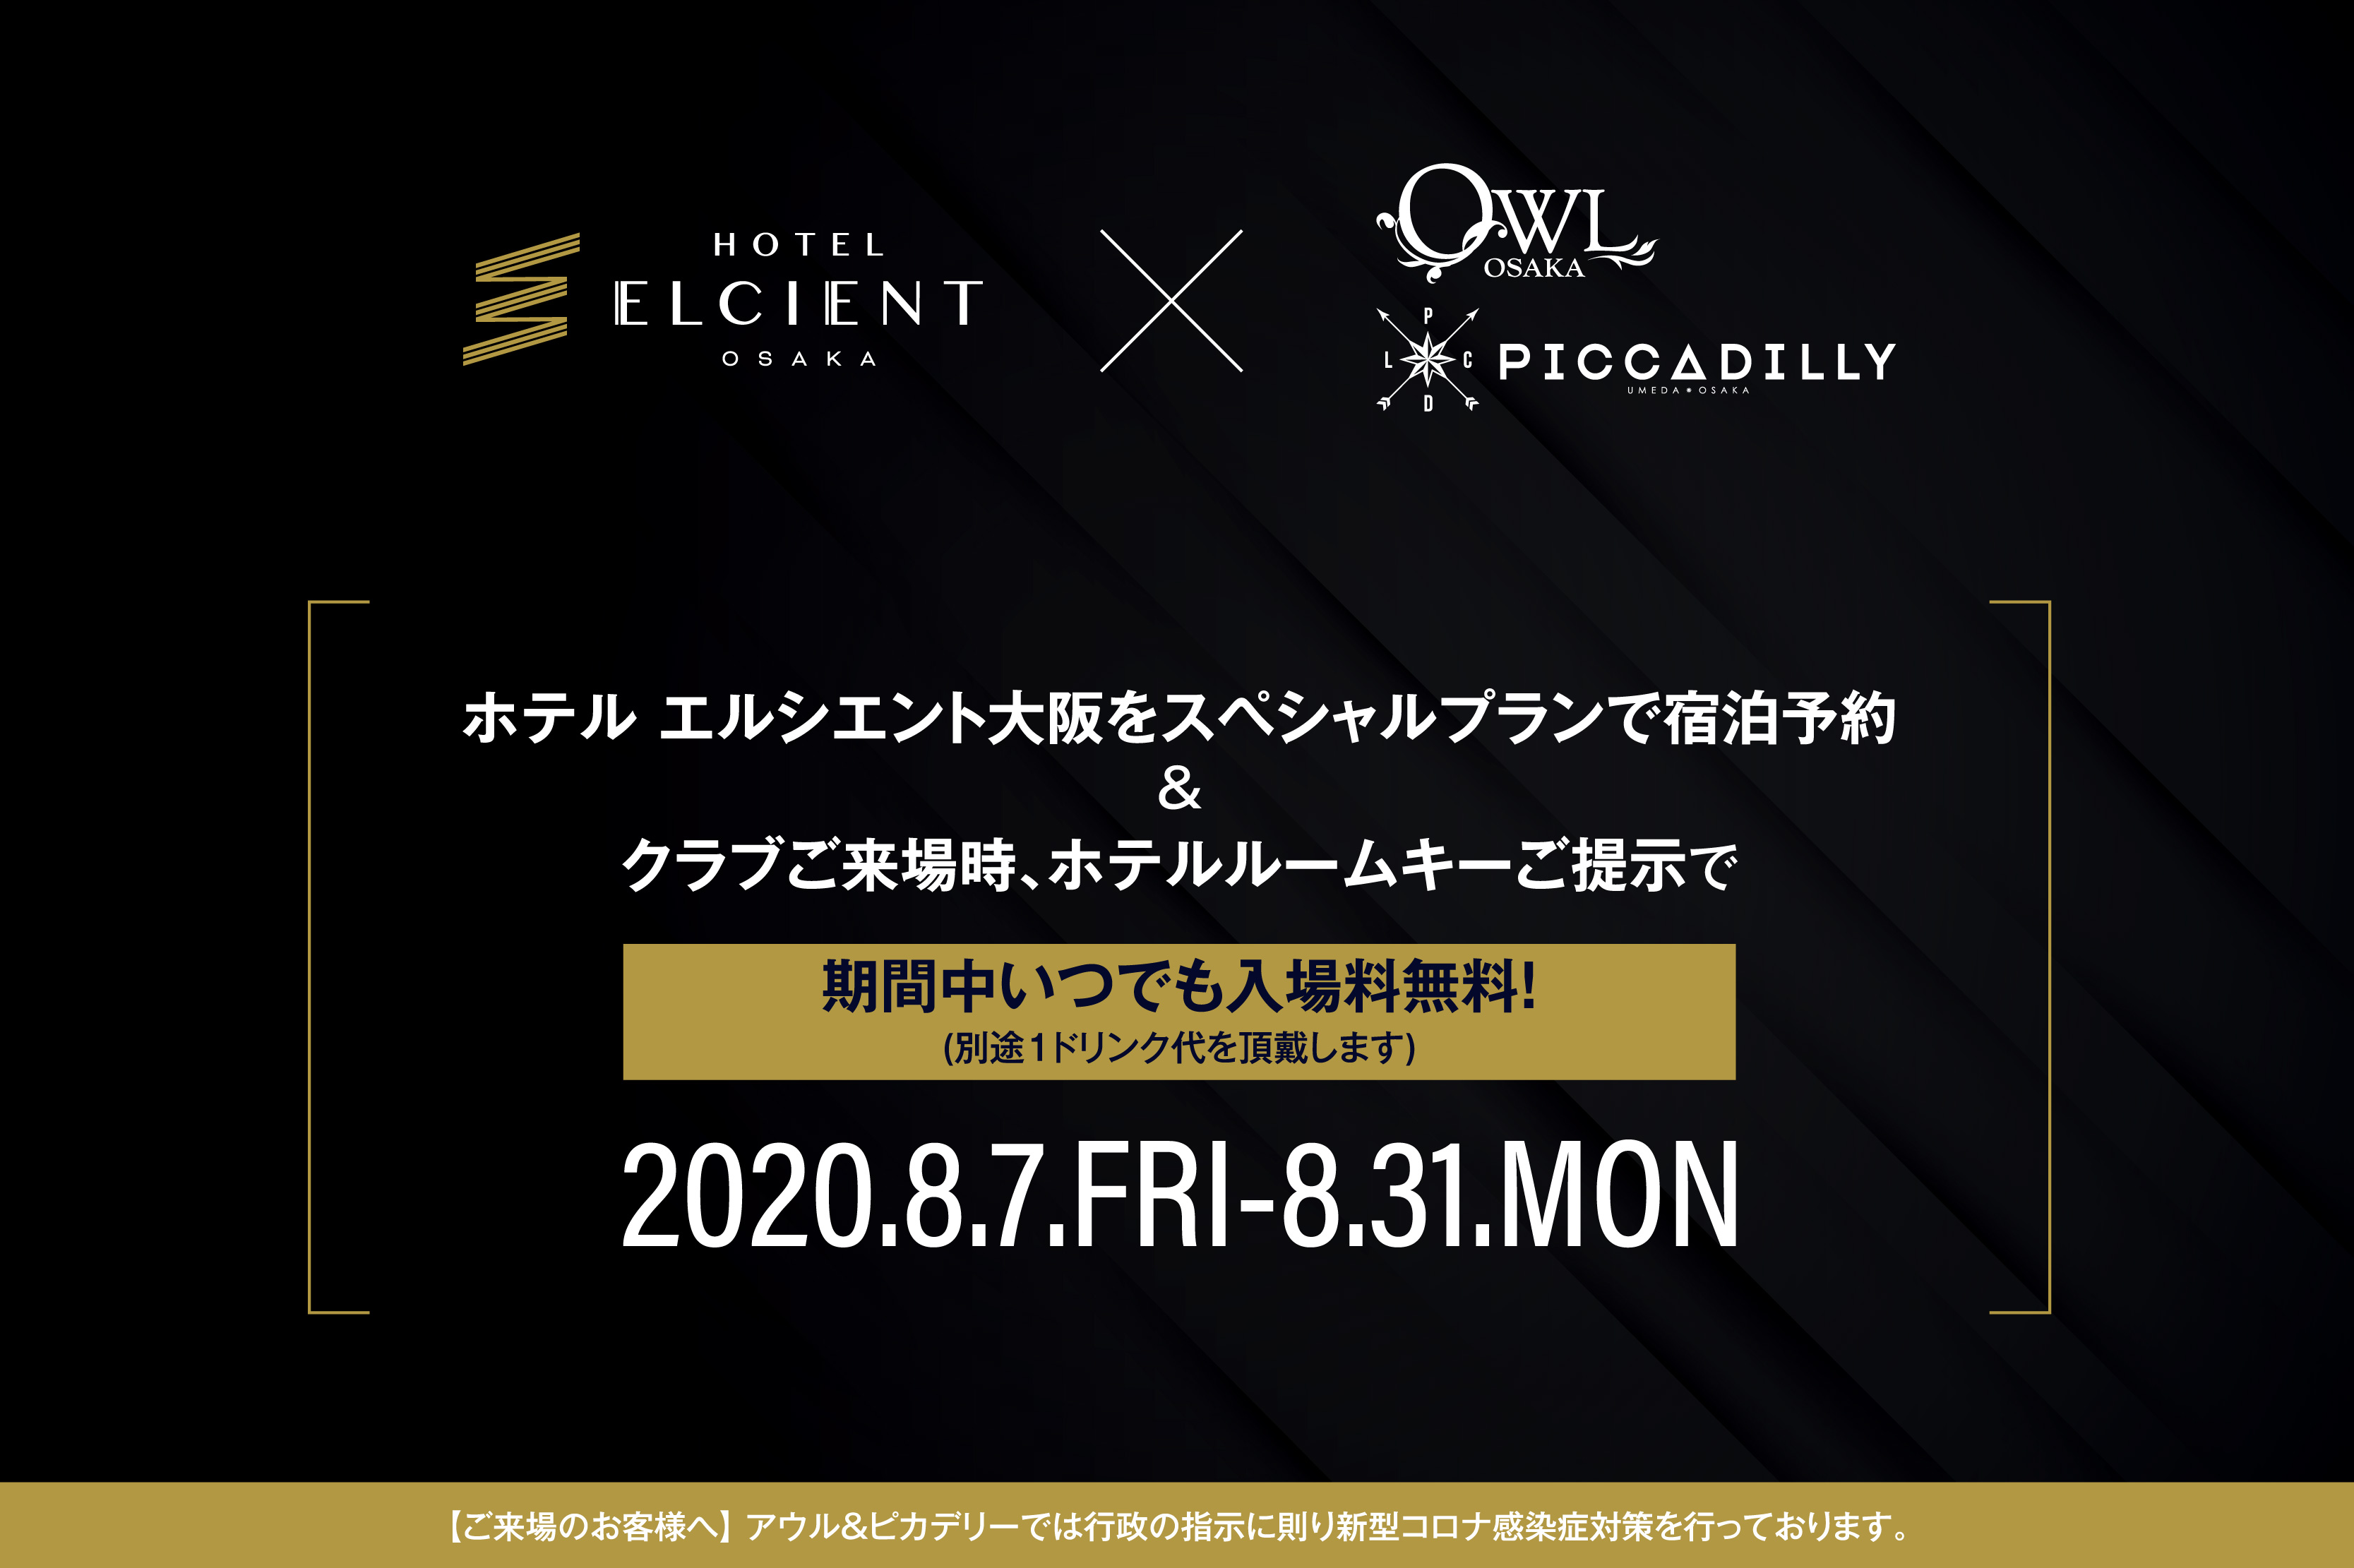 ホテル エルシエント大阪 Owl Osaka Club Piccadilly 特別コラボプラン販売 ホテルルームキー提示で 期間中入場料がいつでも無料に ８月７日 ８月31日 Newscast